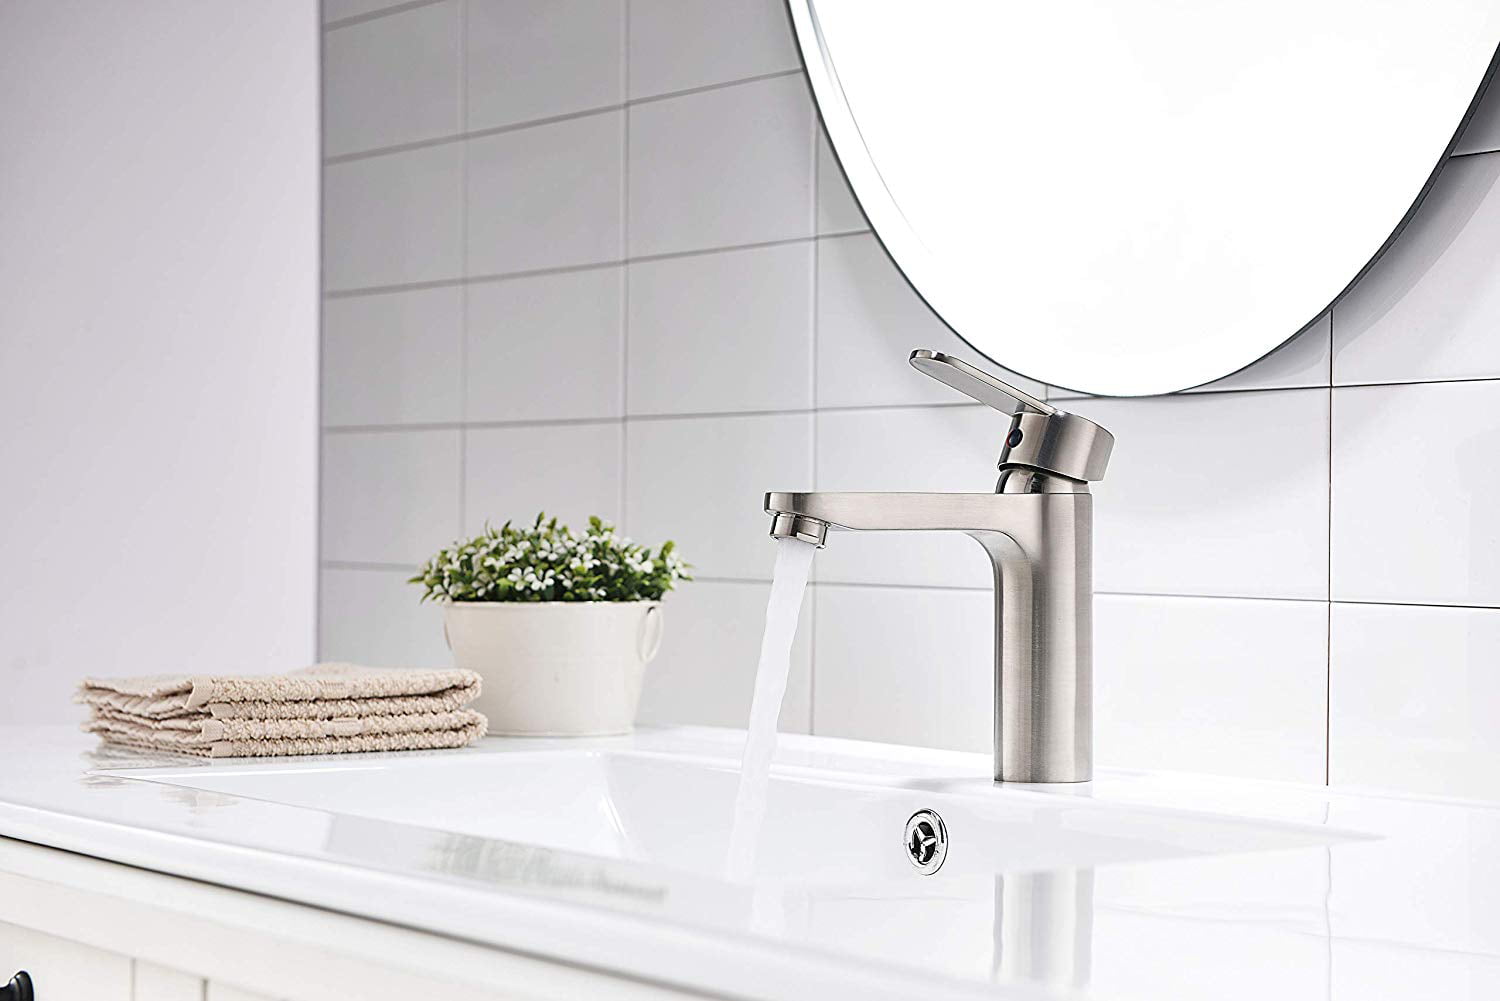 Unique White Bathroom Basin Vessel Sink Mixer Faucet One Handle Hole Brass Taps 